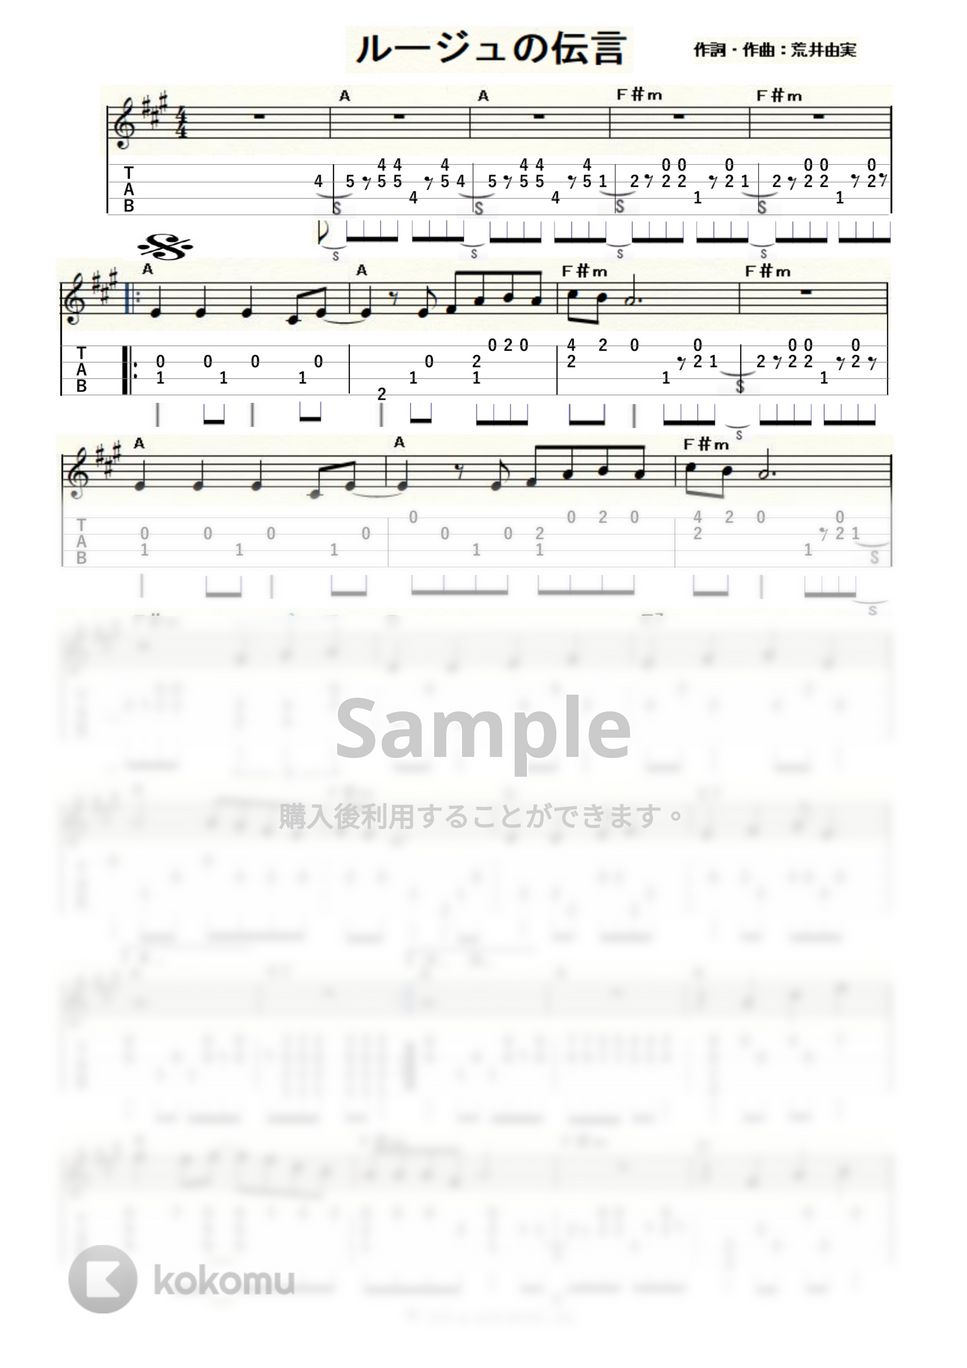 荒井由実 - ルージュの伝言 (ｳｸﾚﾚｿﾛ / Low-G / 上級) by ukulelepapa